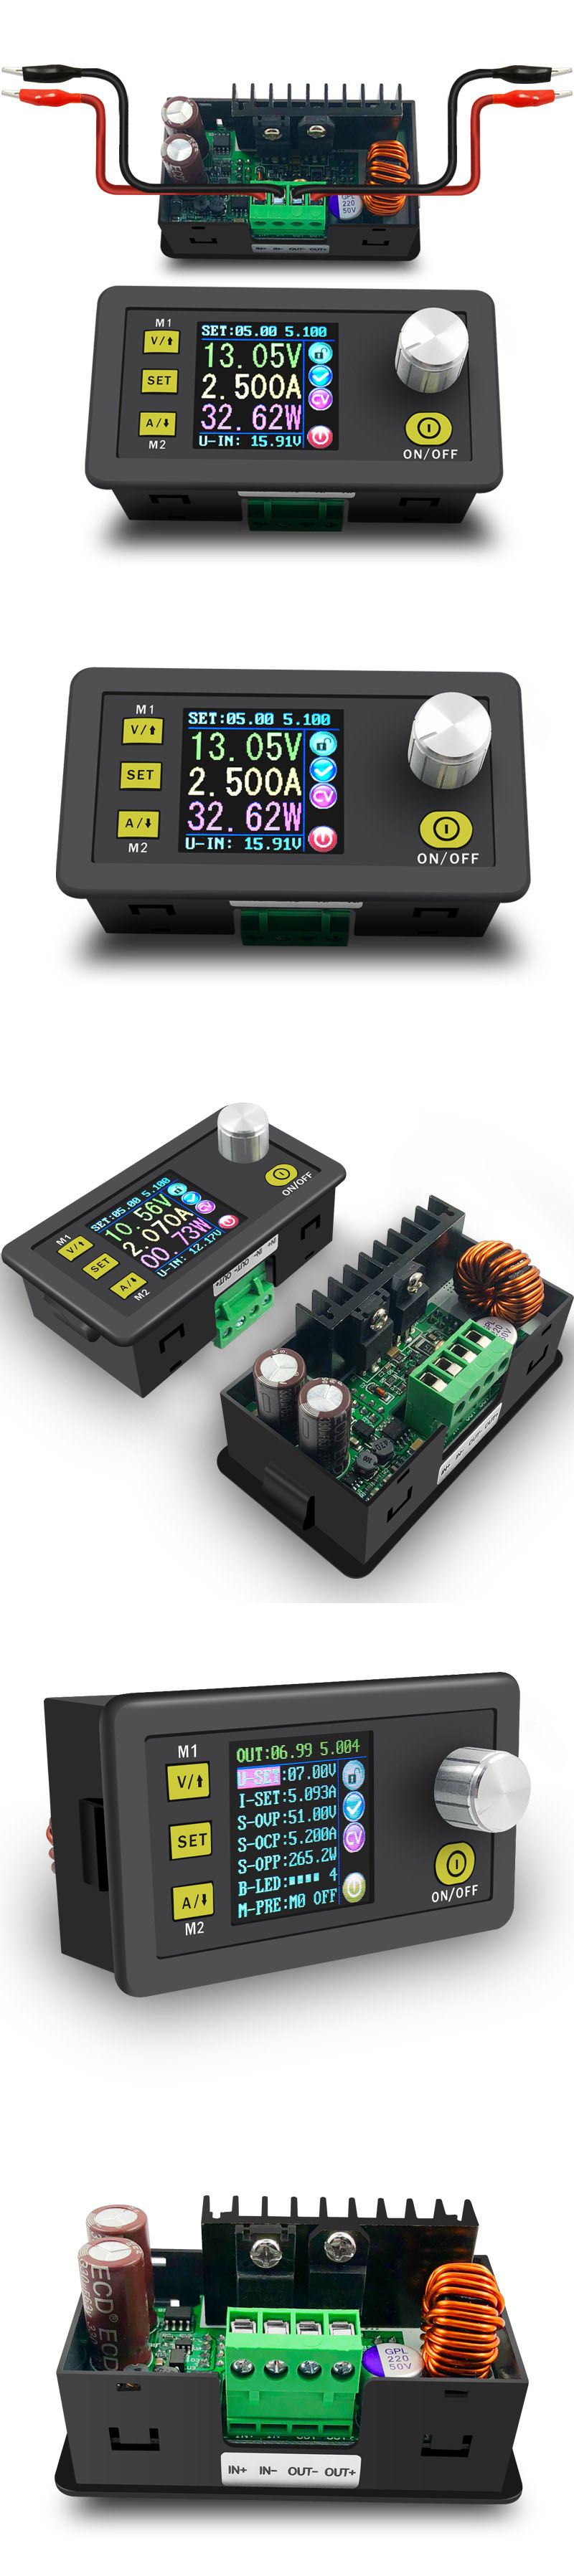 Digital-Control-Power-Supply-50V-5A-Adjustable-Constant-Voltage-Constant-Current-Tester-DC-Voltmeter-1593471-4